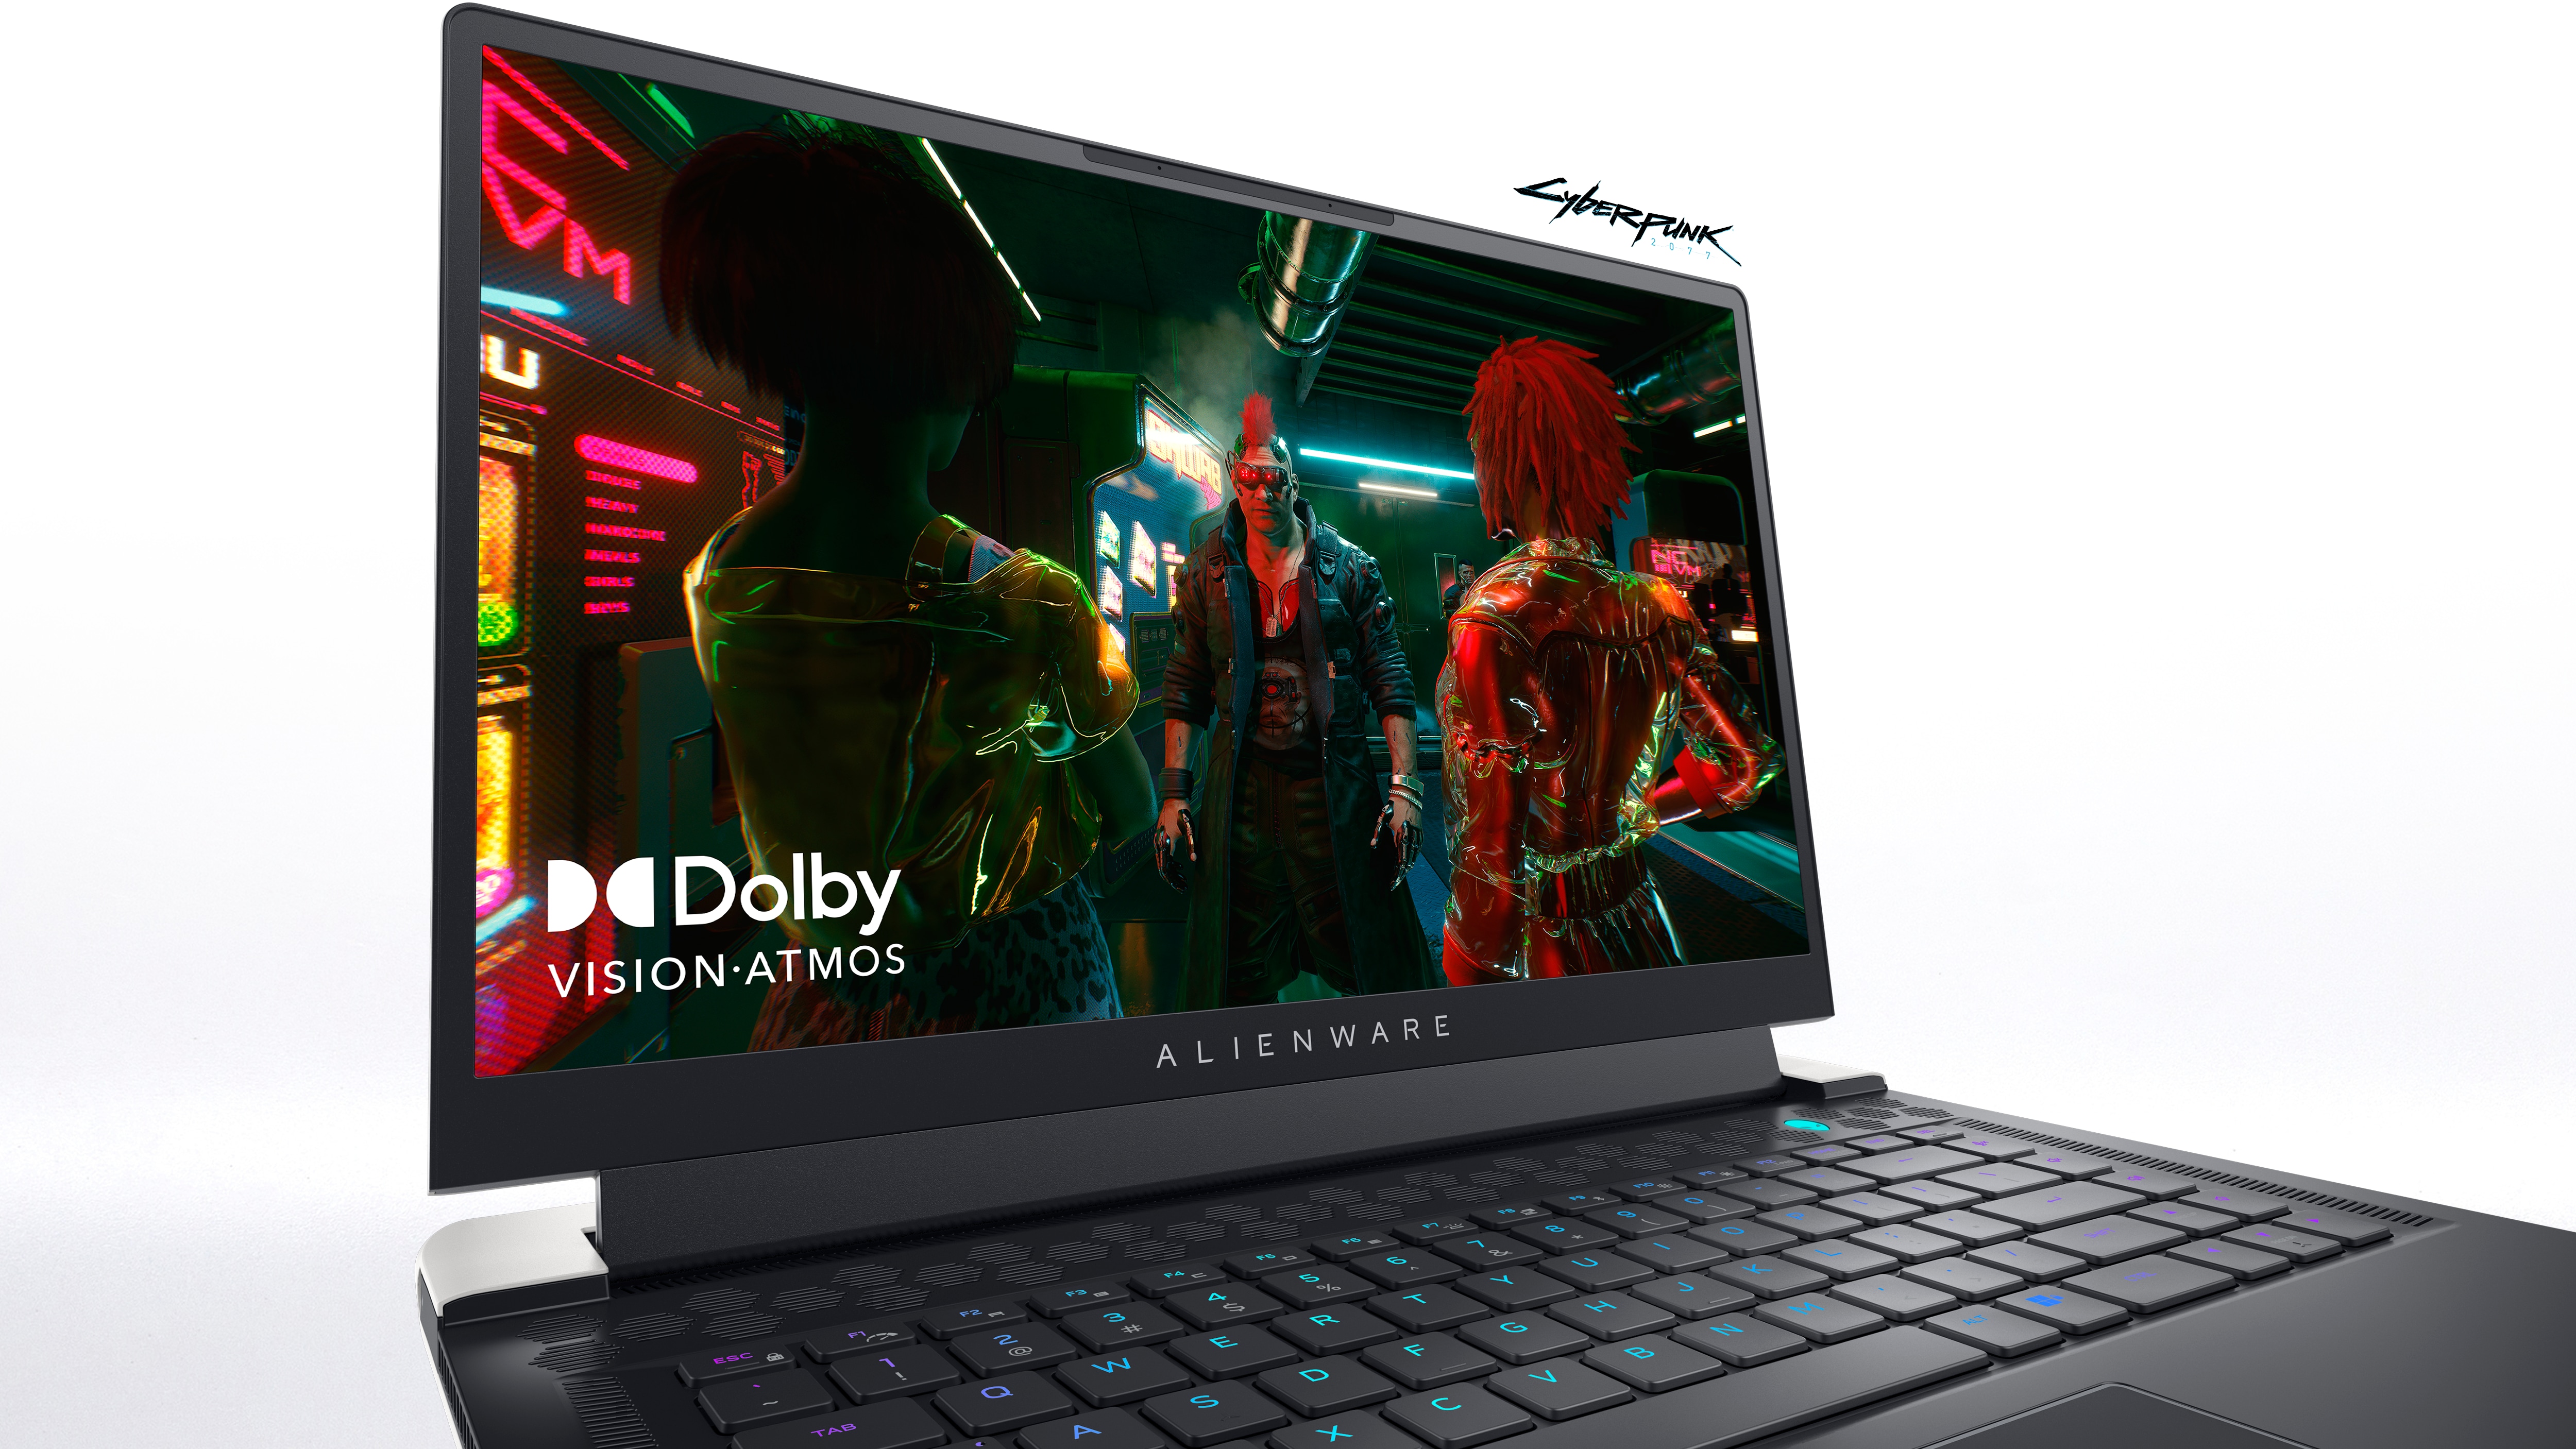 Image d’un ordinateur portable de jeu Dell Alienware x15 R2 avec affichant une image de jeu et un logo Dolby Vision-Atmos à l’écran.